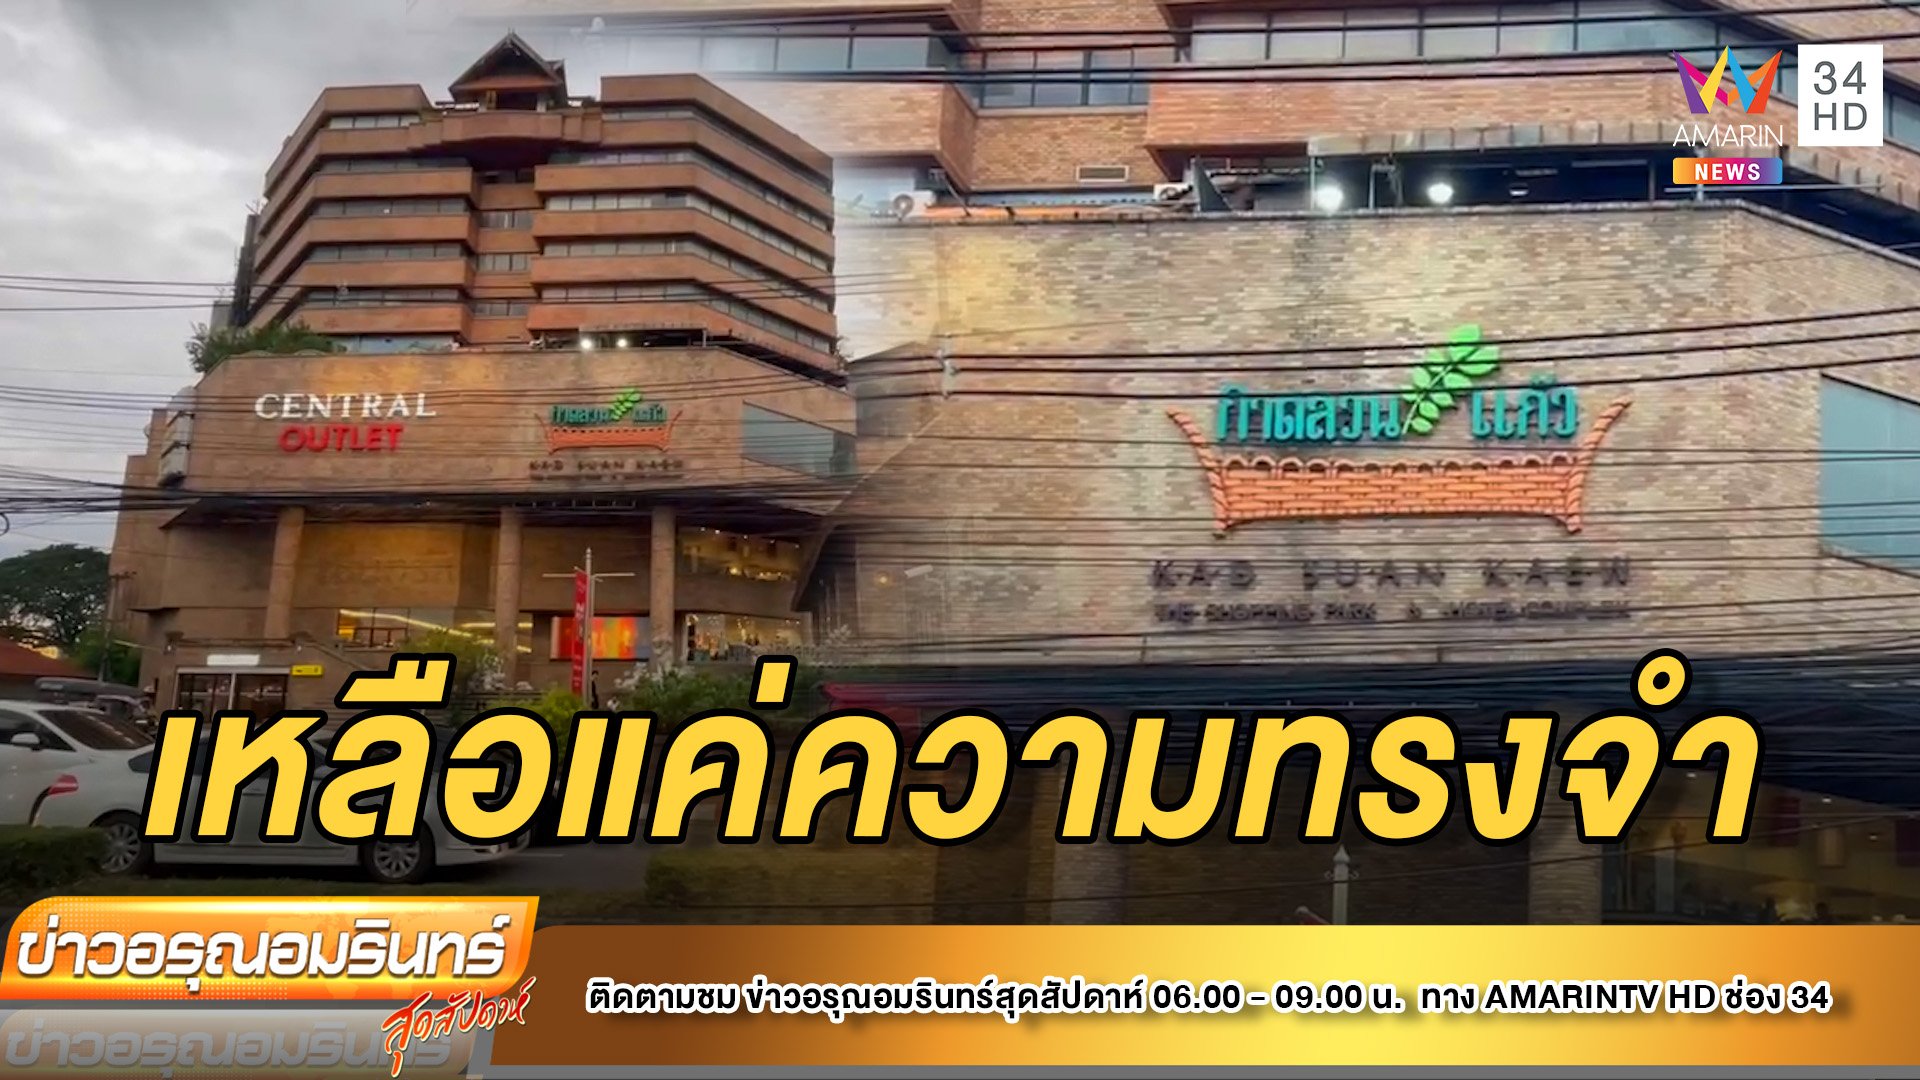 ปิดตำนาน 30 ปี “กาดสวนแก้ว” – เบอร์เกอร์สาขาแรกในไทย | ข่าวอรุณอมรินทร์ | 18 มิ.ย. 65 | AMARIN TVHD34